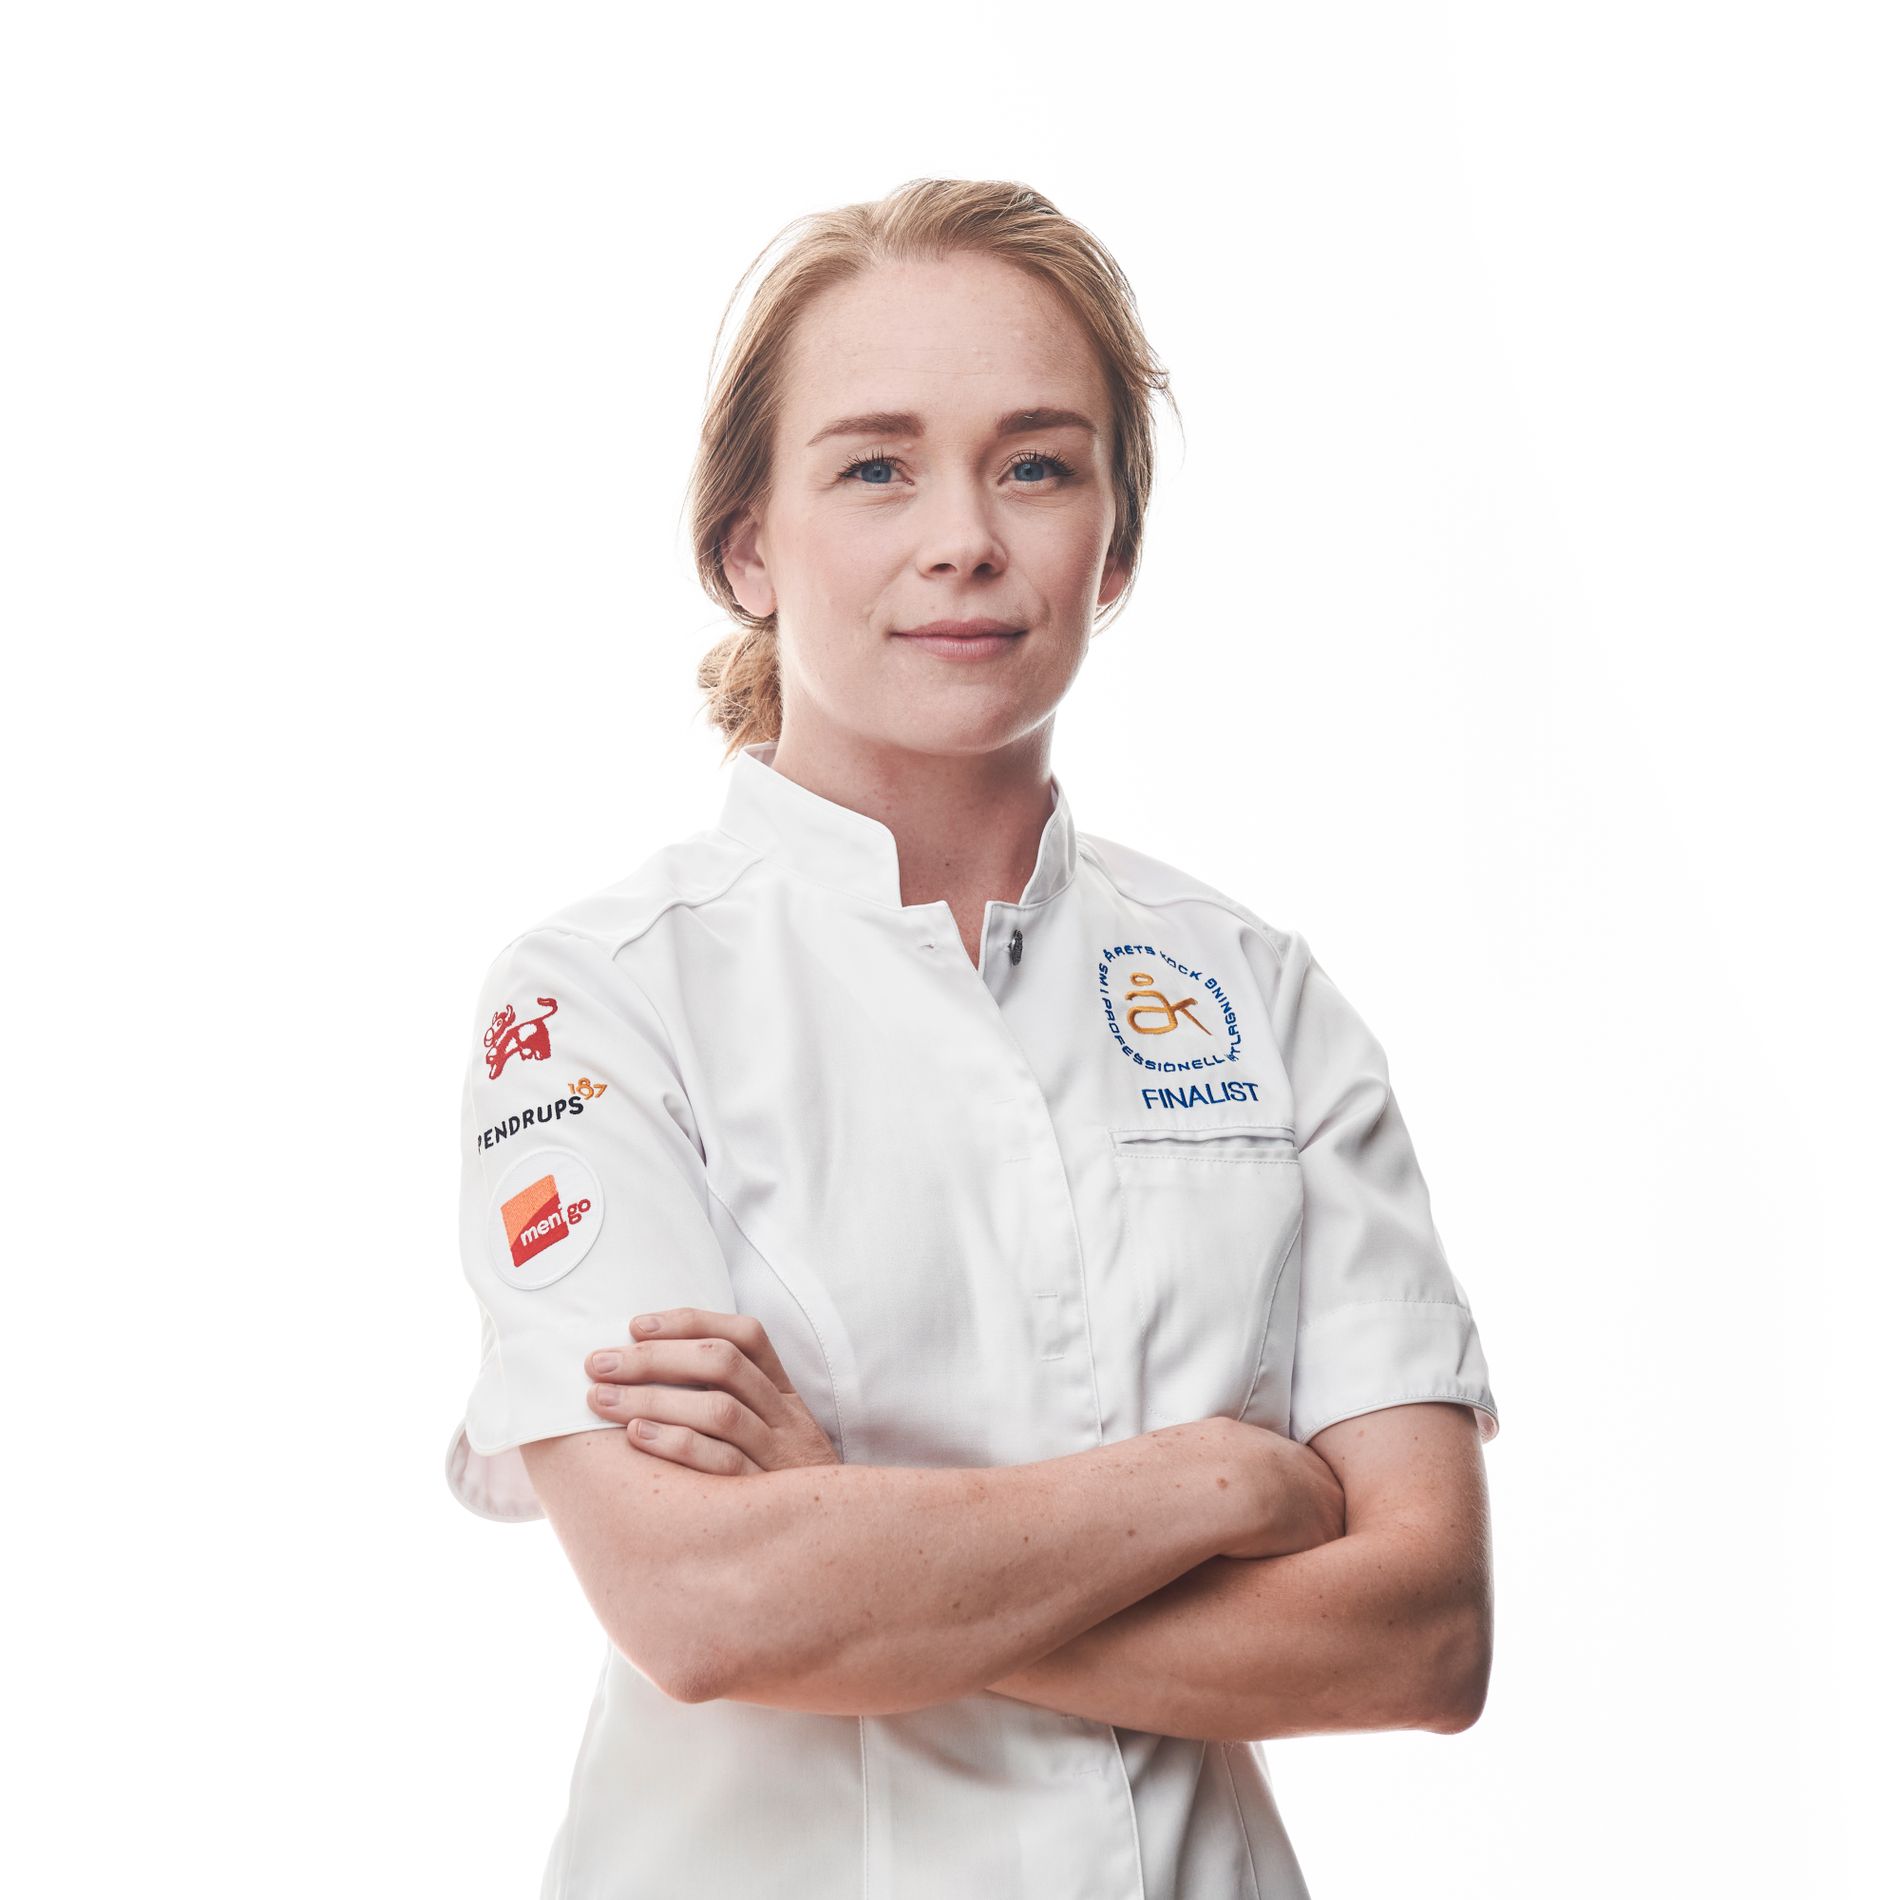 Louise Johansson är en av åtta tävlande i Årets kock 2021 som avgörs 16 september.